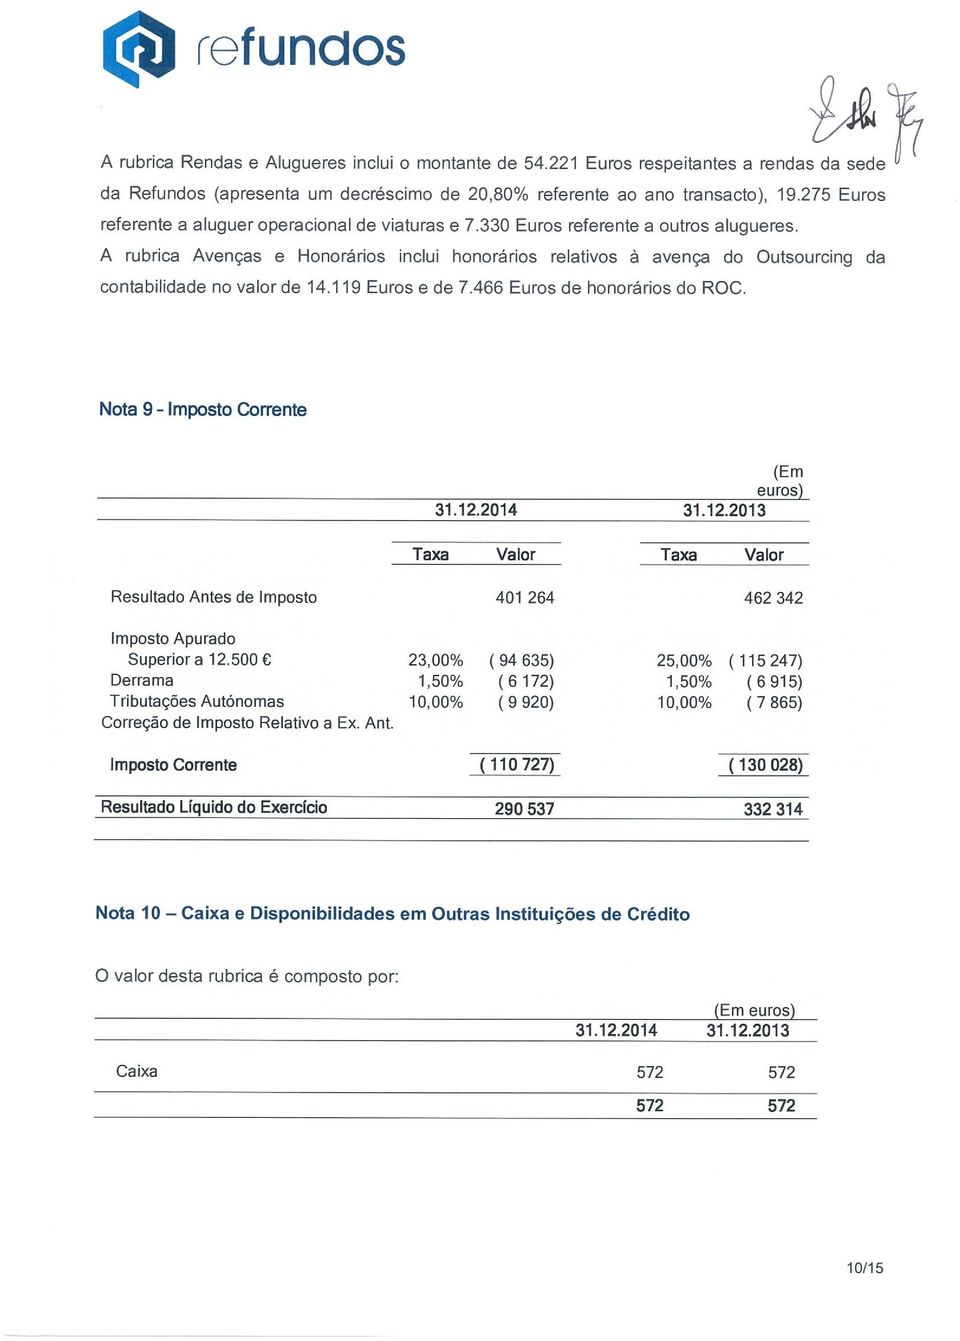 A rubrica Avenças e Honorários inclui honorários relativos à avença do Outsourcing da contabilidade no valor de 14.119 Euros e de 7.466 Euros de honorários do ROC. Nota 9-Imposto Corrente 31.12.